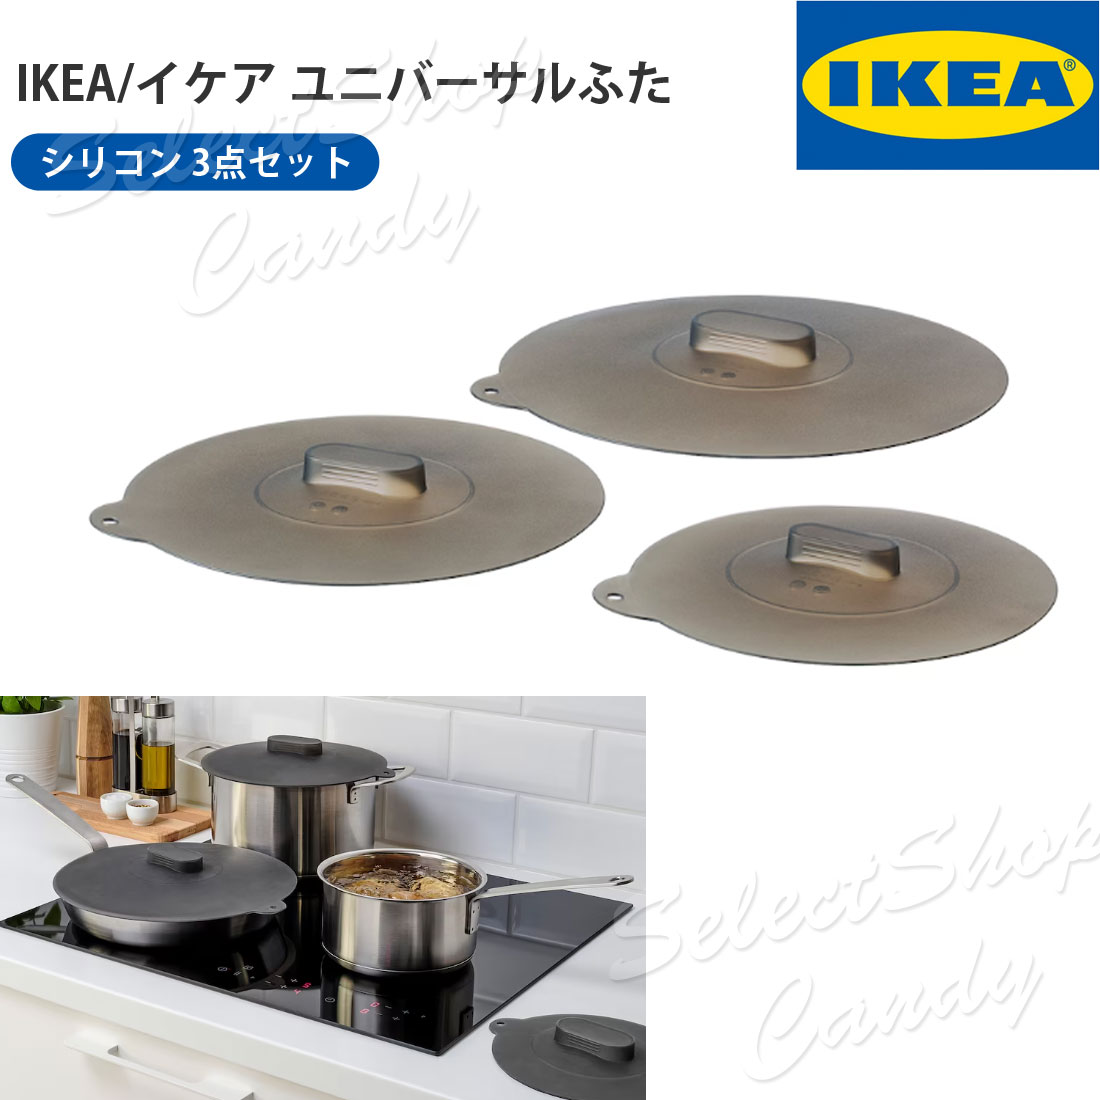 ●送料無料● IKEA イケア ユニバーサル ふた 3点セット シリコン KLOCKREN クロックレン LT-06